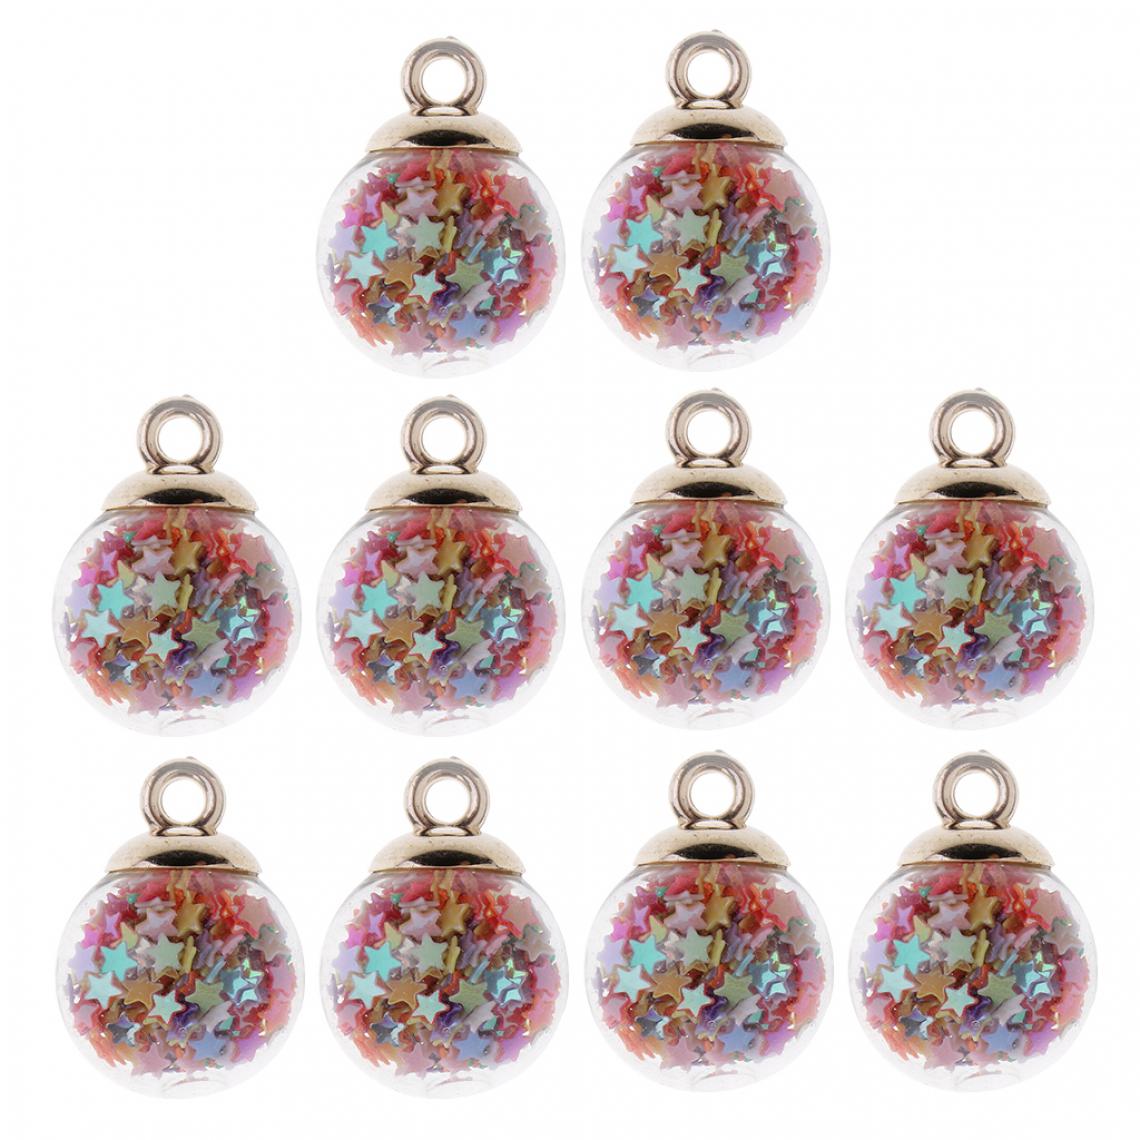 marque generique - 10 Pièces 16mm Minuscule Star Glass Ball Charmes Pendentif DIY Artisanat multicolore - Perles